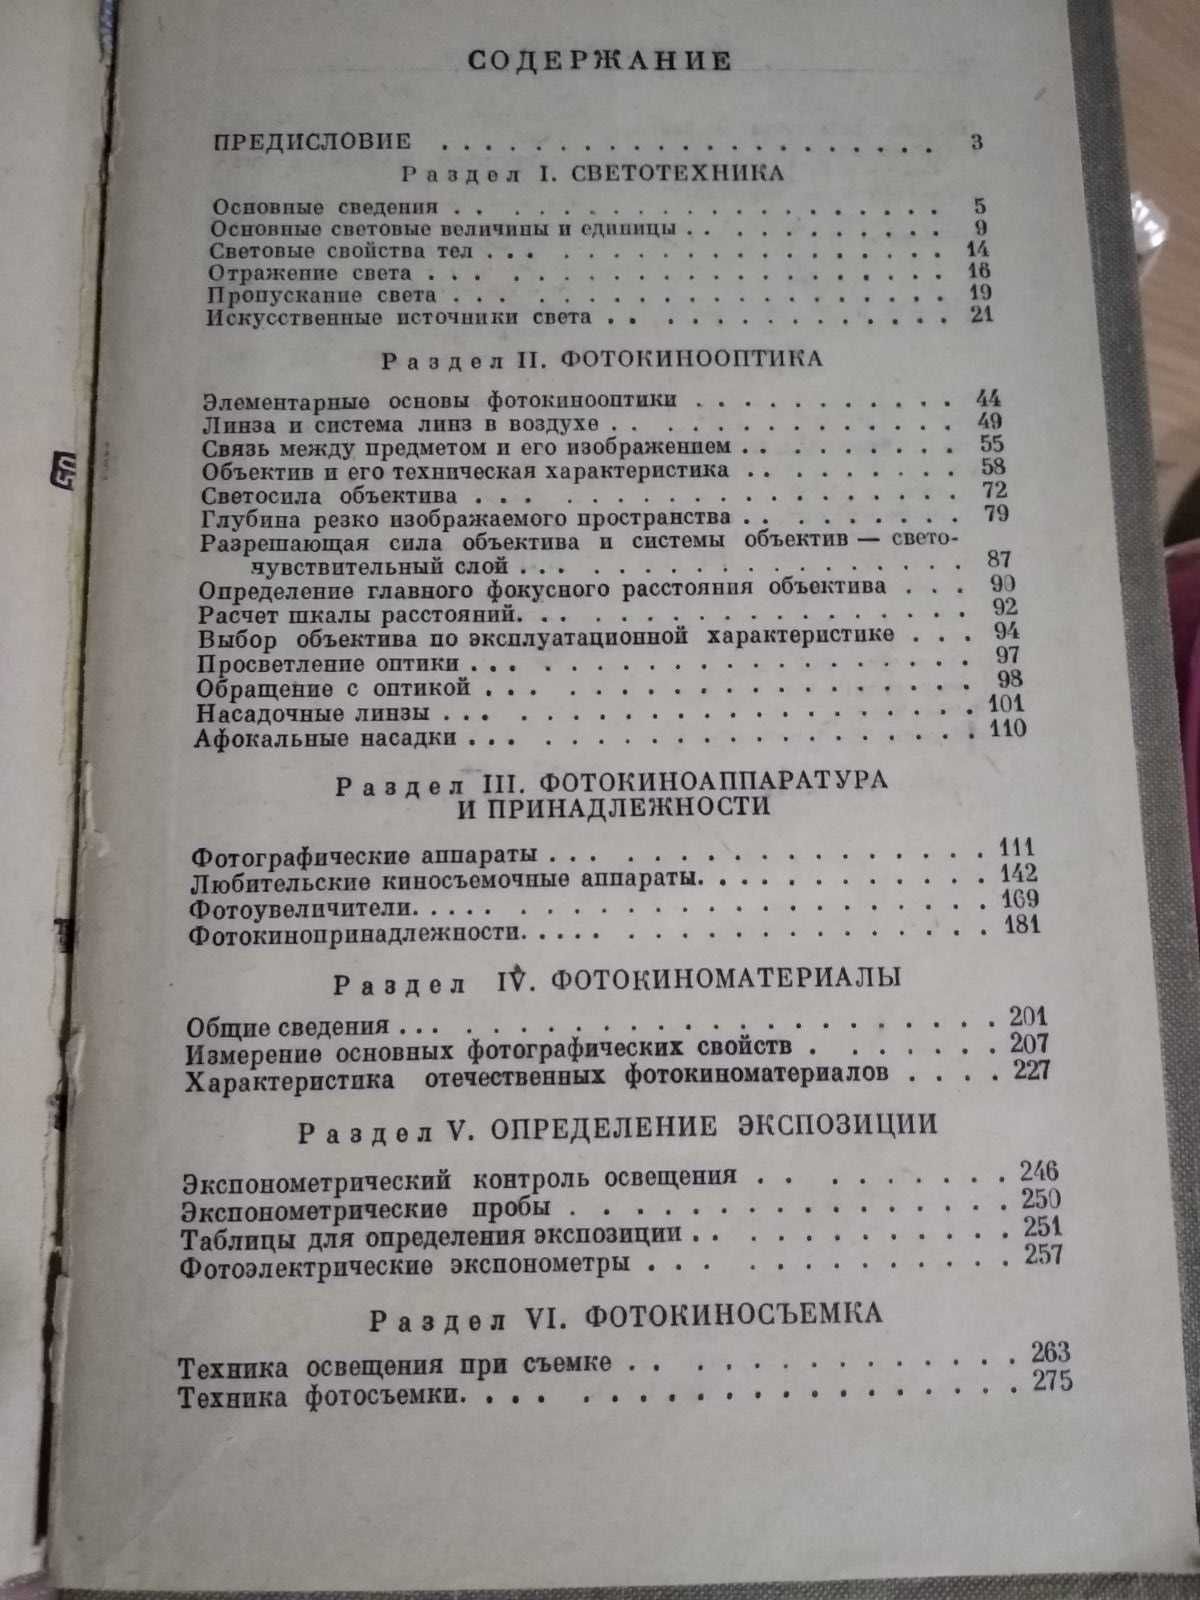 Справочник фотолюбителя. Е.А. Иофис (1961)